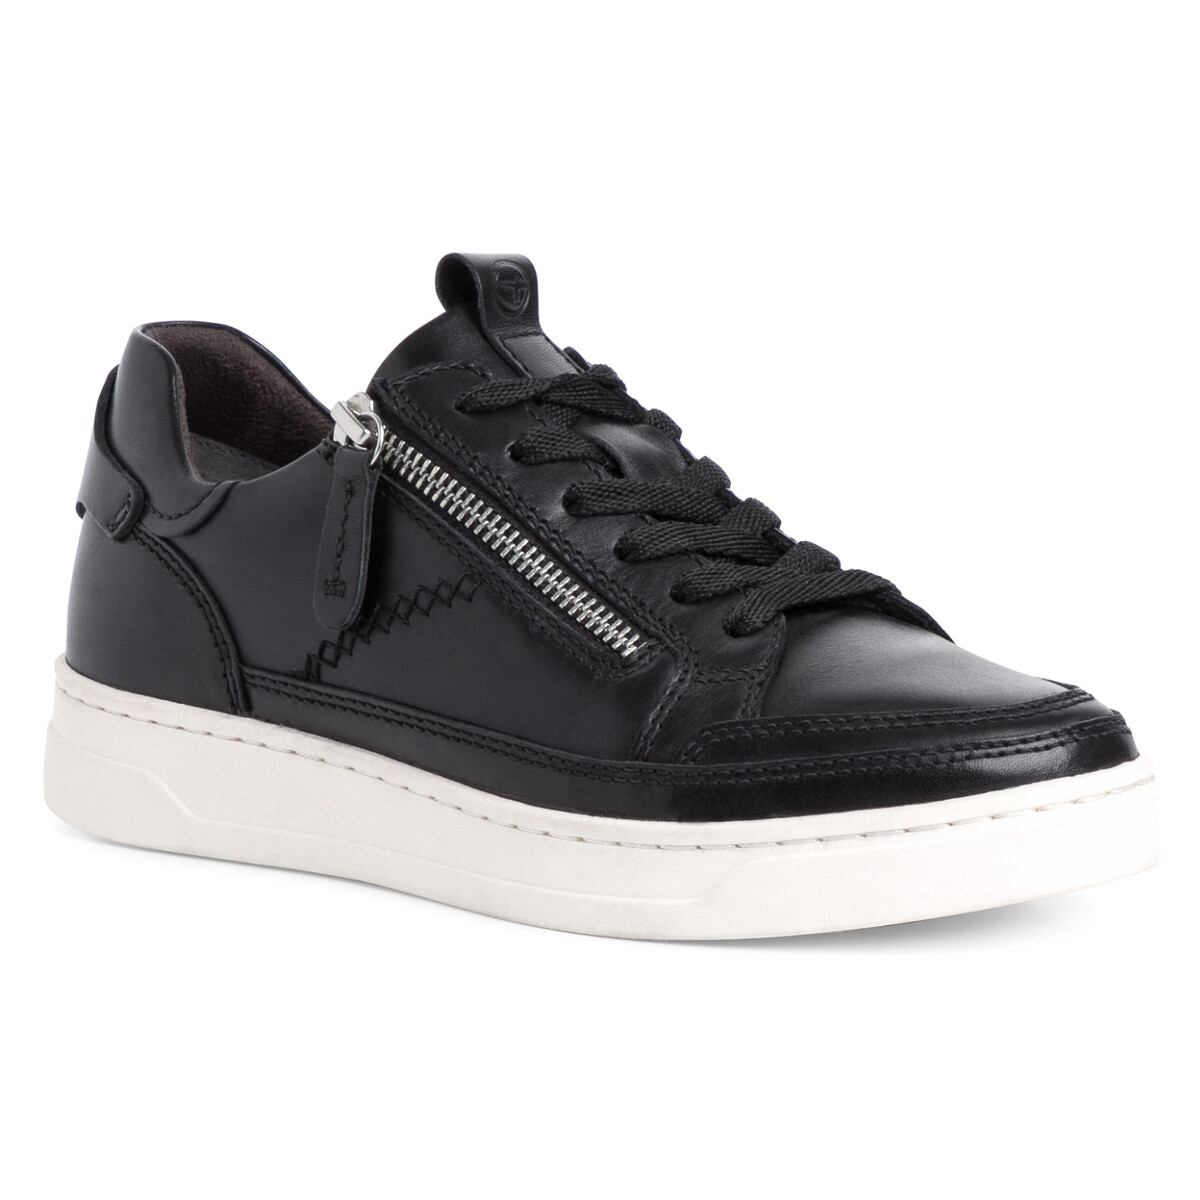 Sneakers Tamaris Black (1-1-23707-39 016)